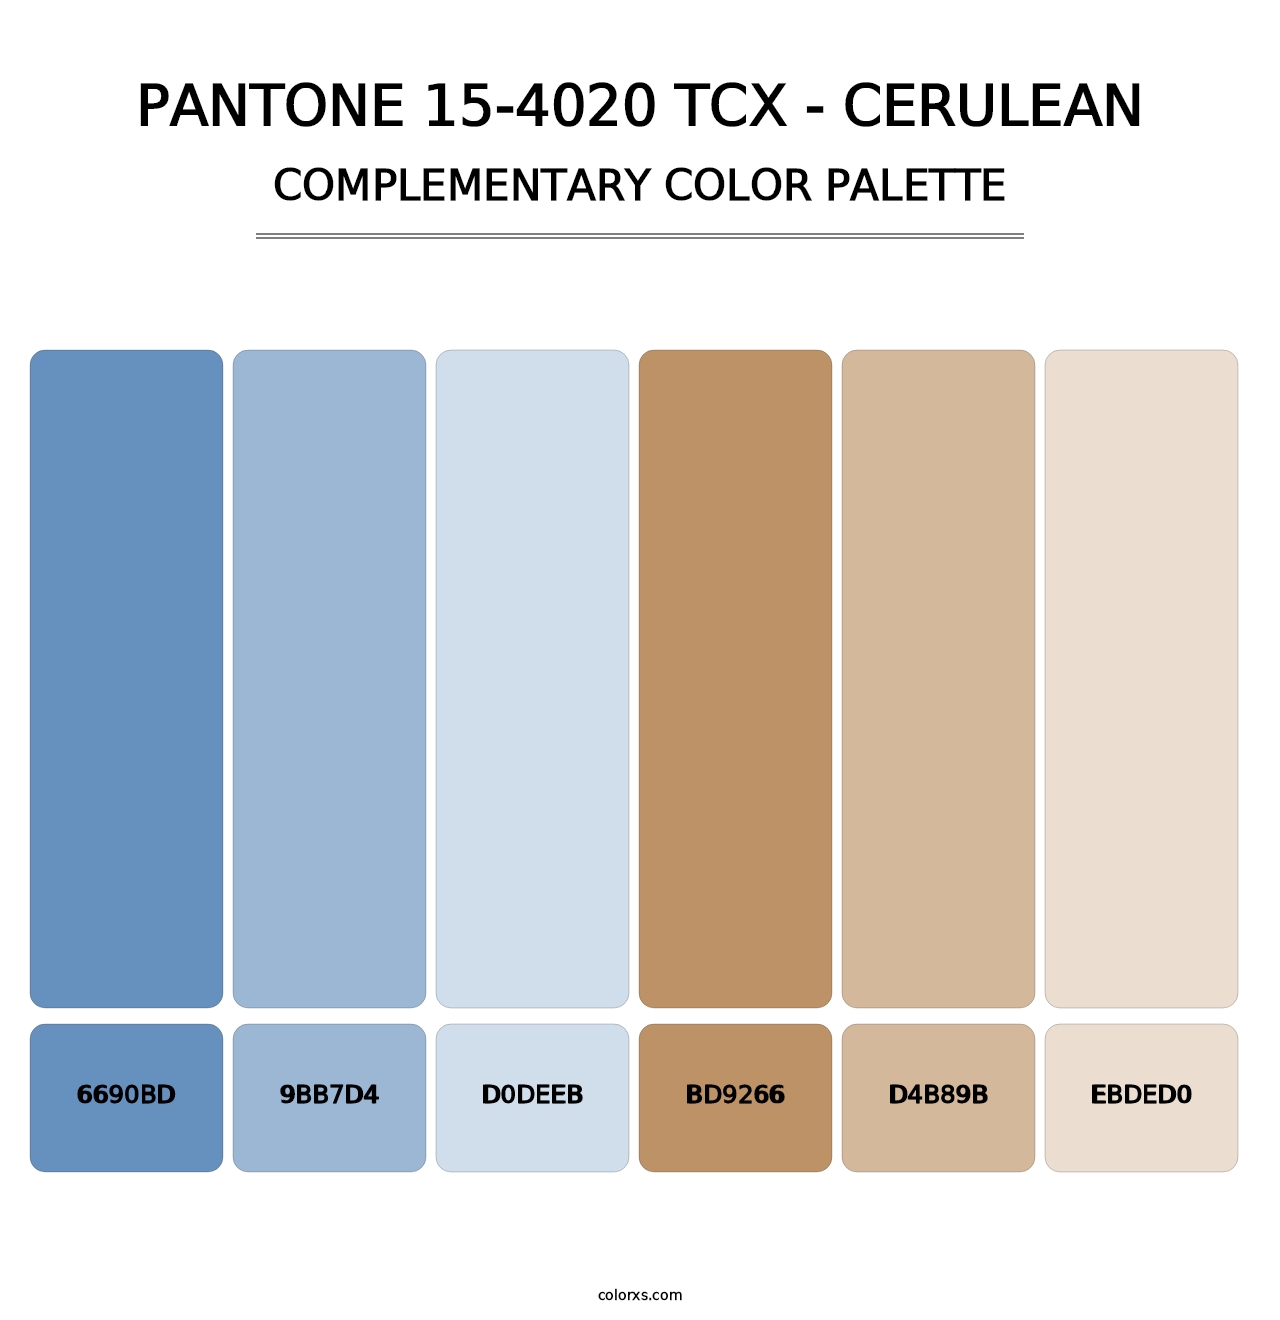 PANTONE 15-4020 TCX - Cerulean - Complementary Color Palette